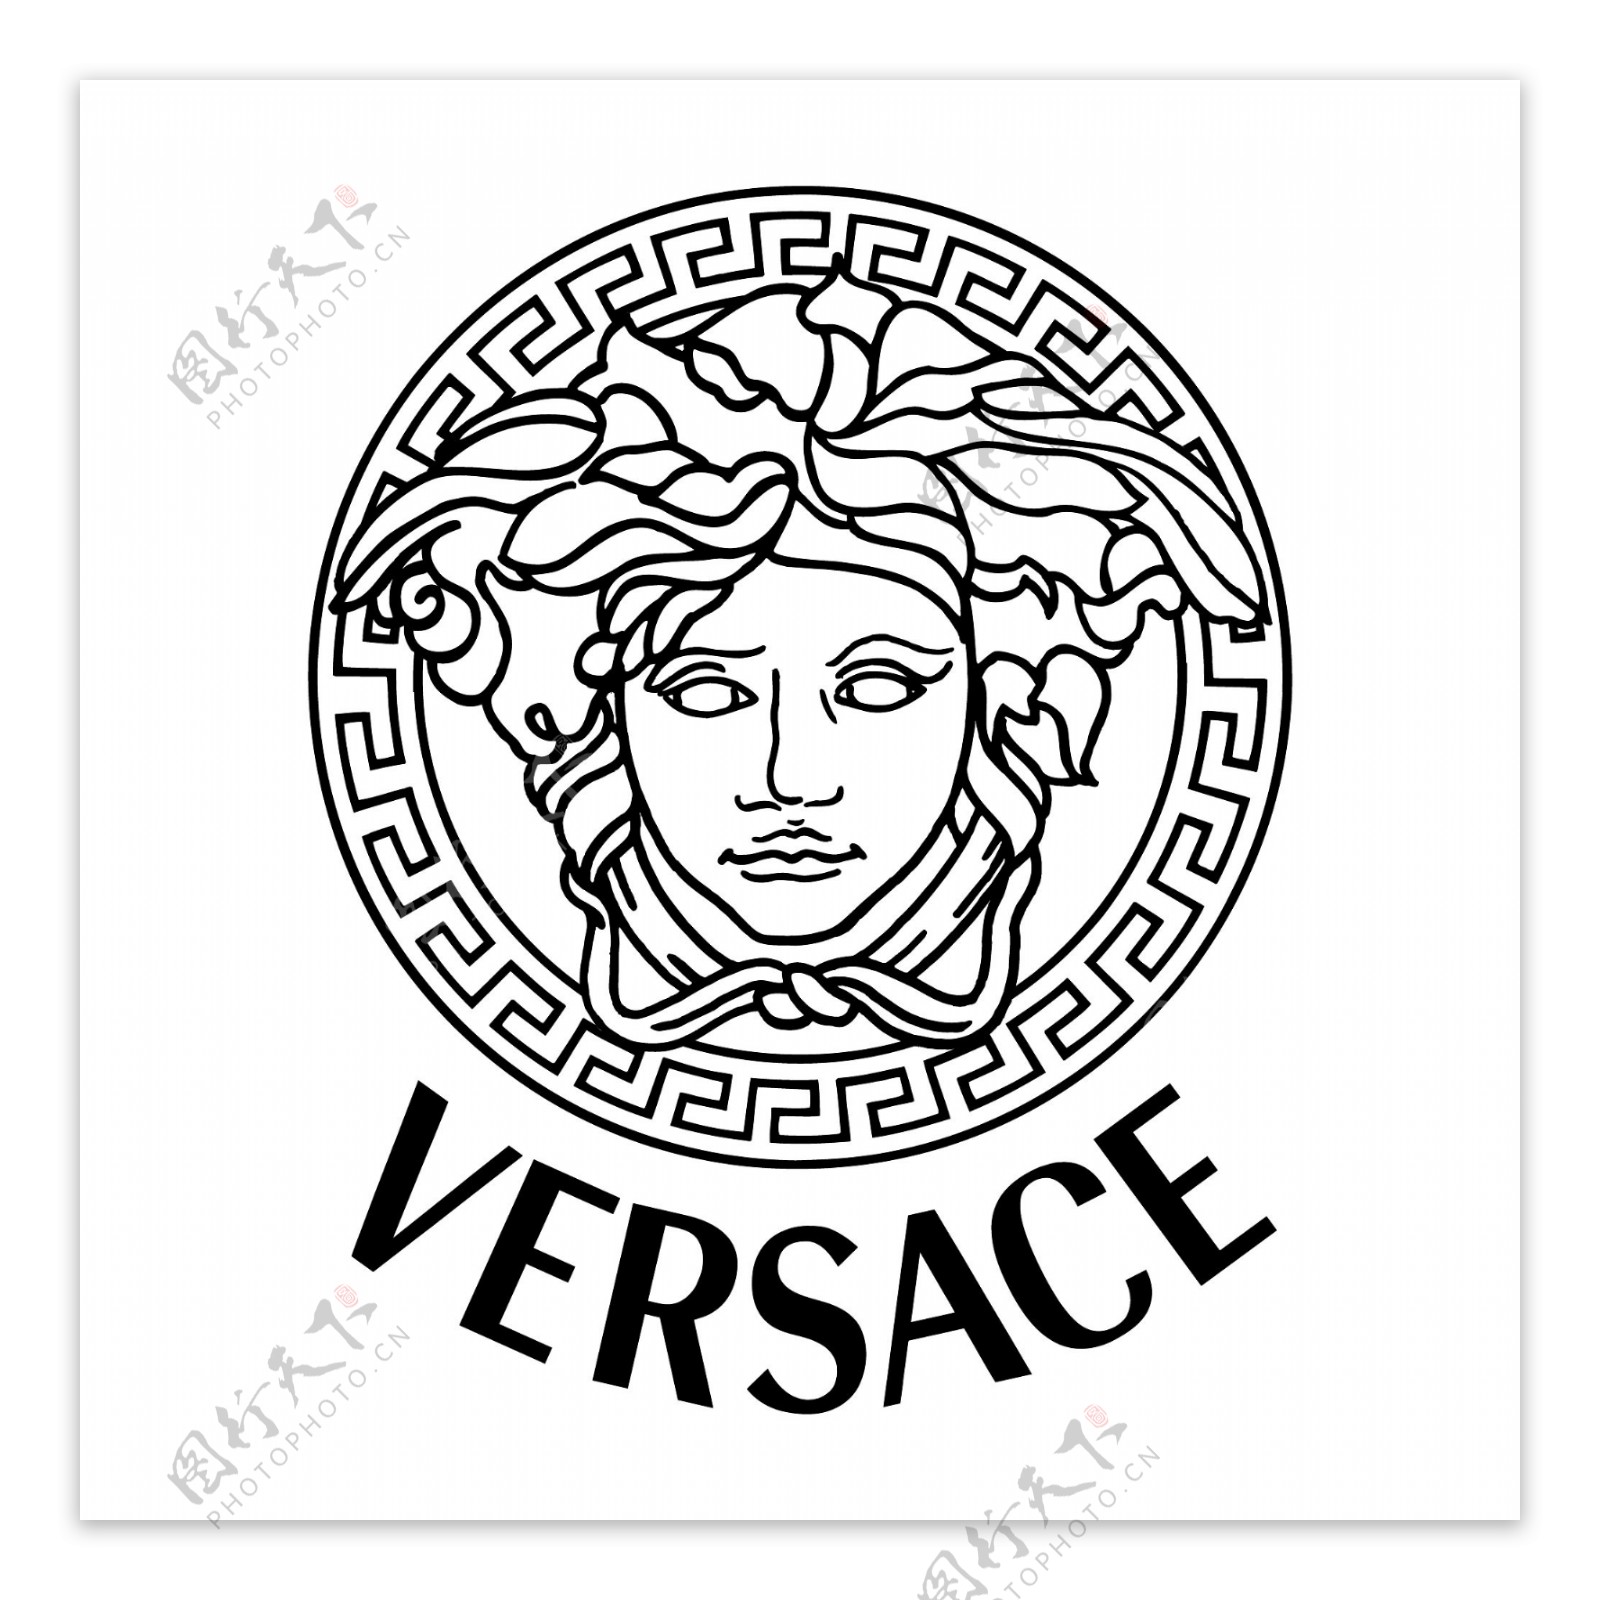 范思哲Versace矢量标志